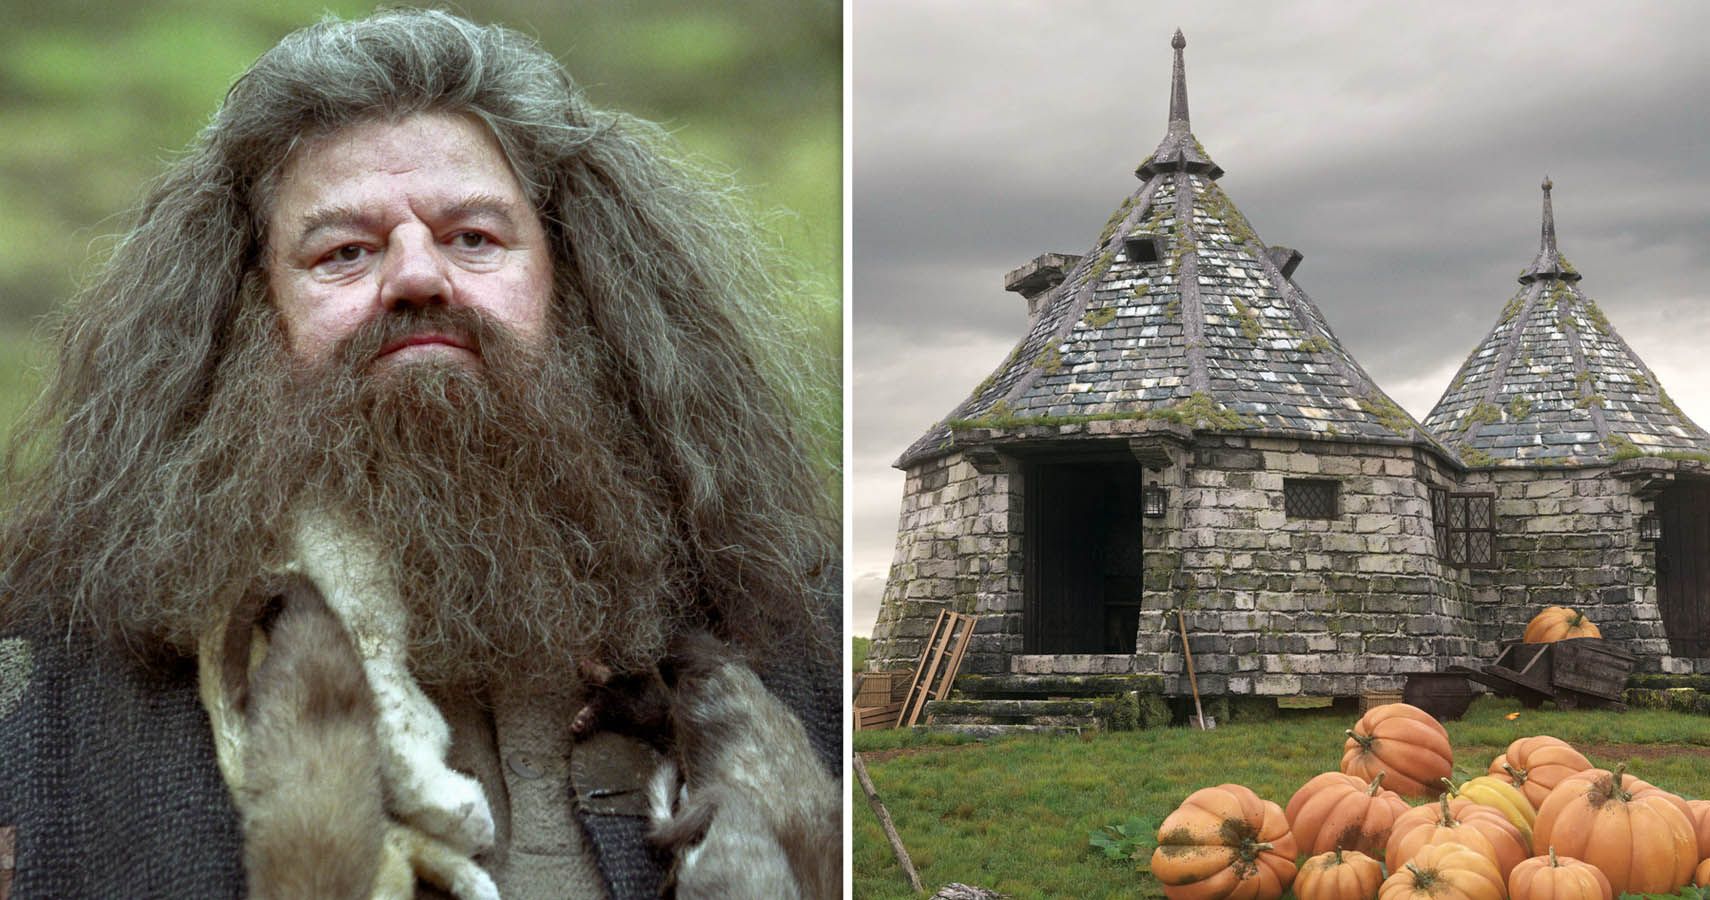 Split image of Hagrid and Hagrid's hut